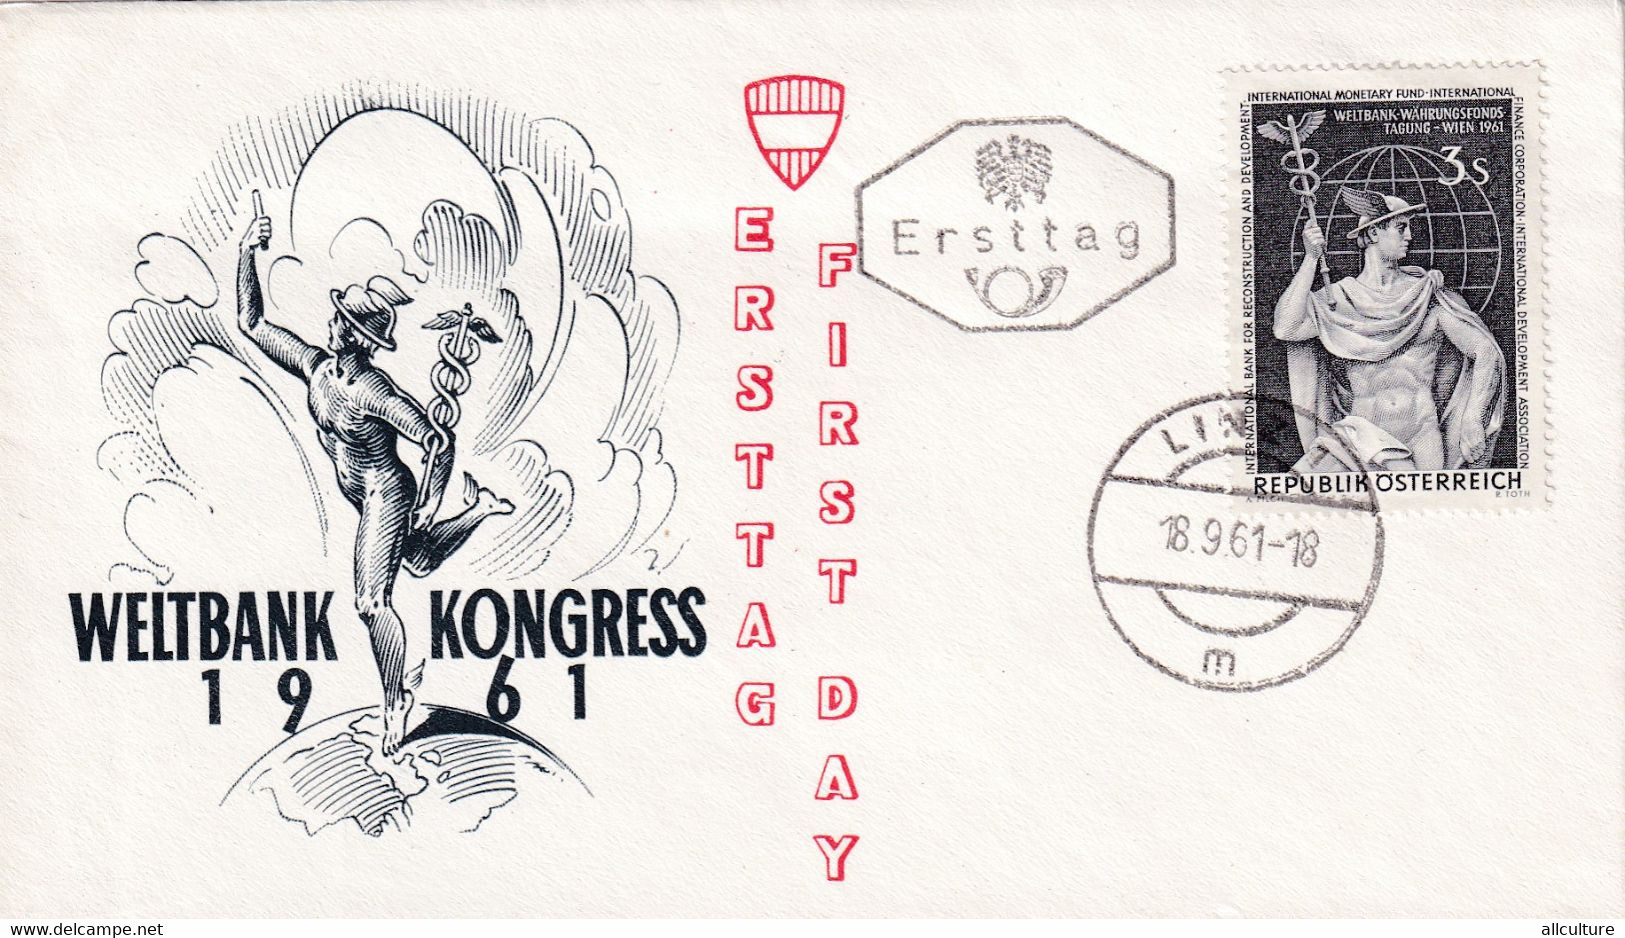 A8383- WELTBANK KONGRESS 1961, ERSTTAG, LINZ 1961 REPUBLIK OESTERREICH AUSTRIA USED STAMP ON COVER - Briefe U. Dokumente